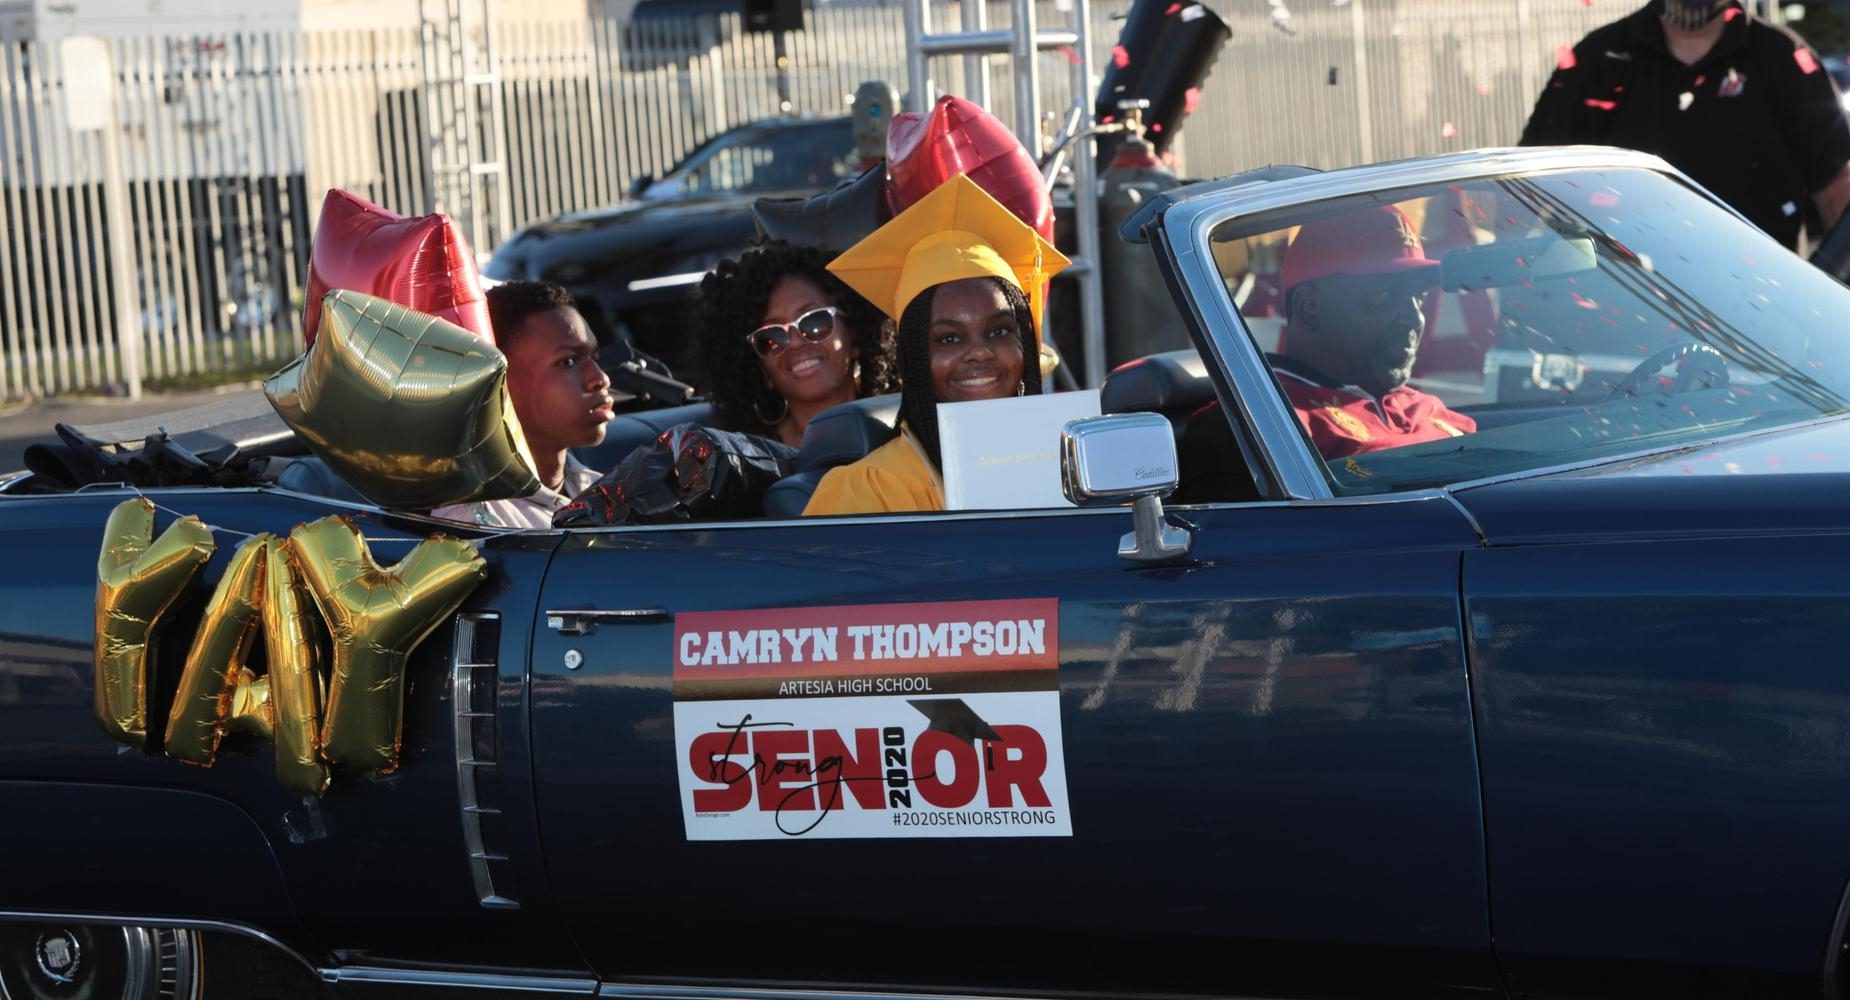 High school senior graduation car parade